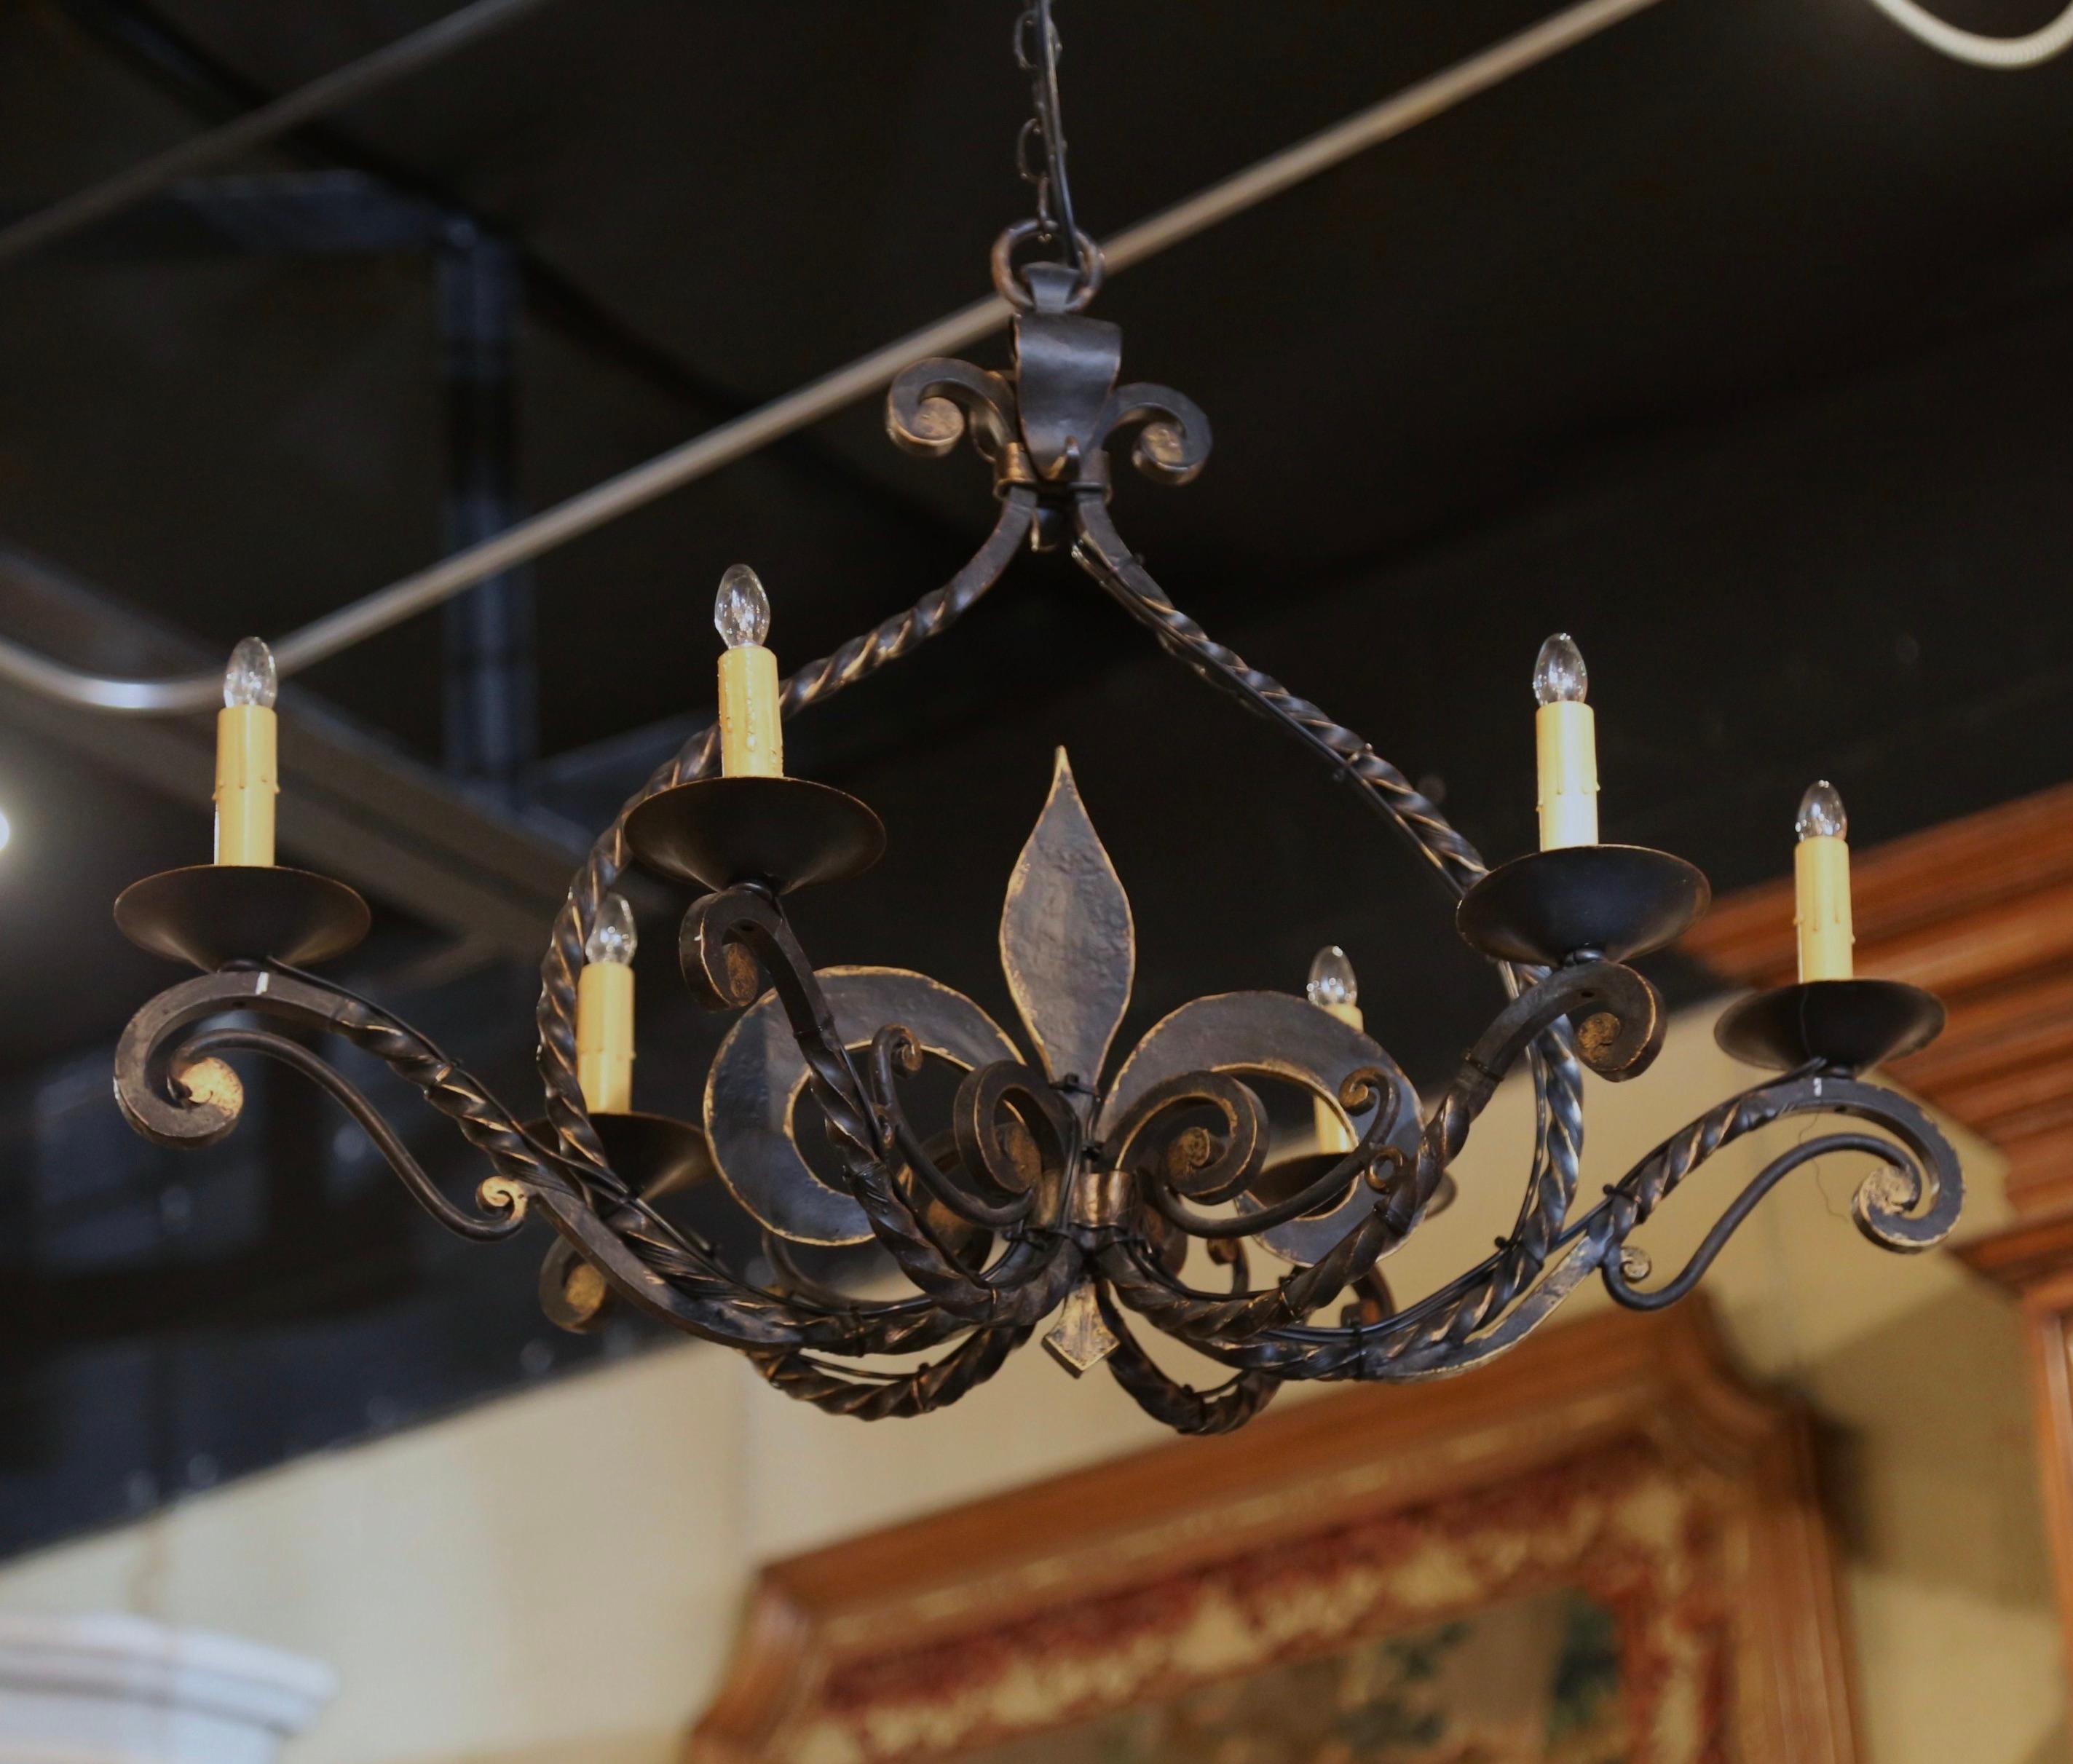 Verleihen Sie Ihrem Haus mit dieser eleganten Leuchte einen Hauch von gotischem Stil. Der antike Kronleuchter wurde um 1920 in der Normandie, Frankreich, geschmiedet und hat eine längliche Form mit einem großen, handgeschmiedeten Fleur-de-Lys-Motiv